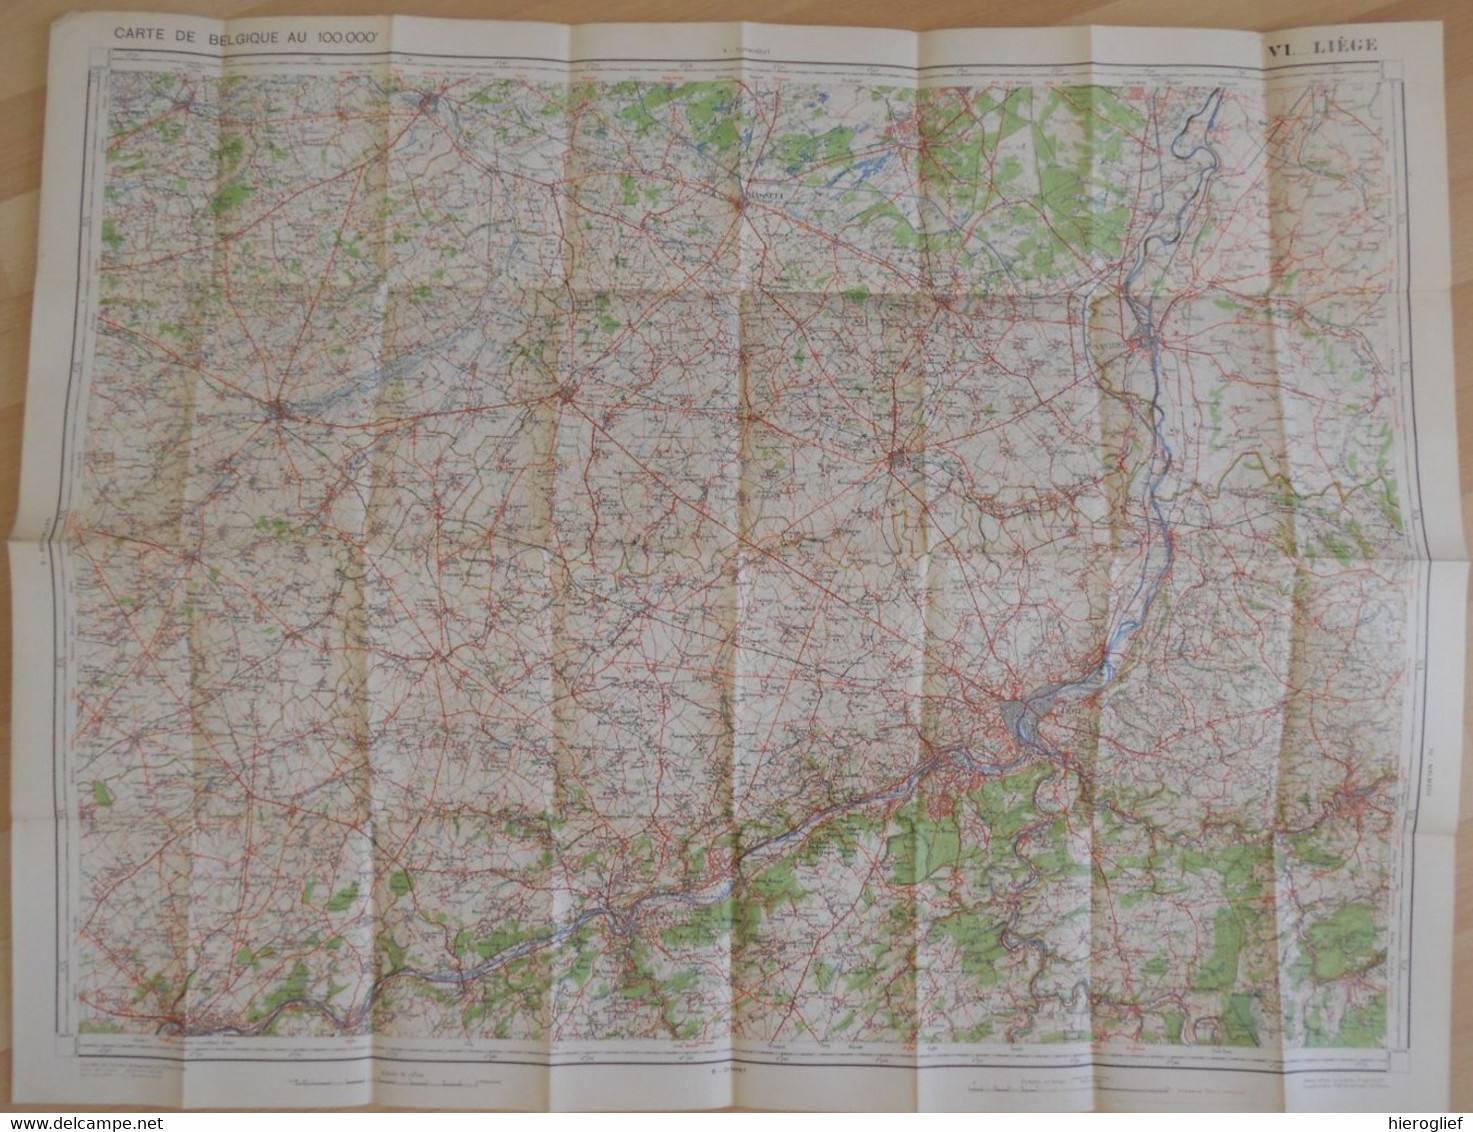 Carte De BELGIQUE Nr 6 LIEGE Institut Cartographique Militaire Impression Litho 1933 Maastricht Hasselt Tongeren Tienen - Topographische Karten